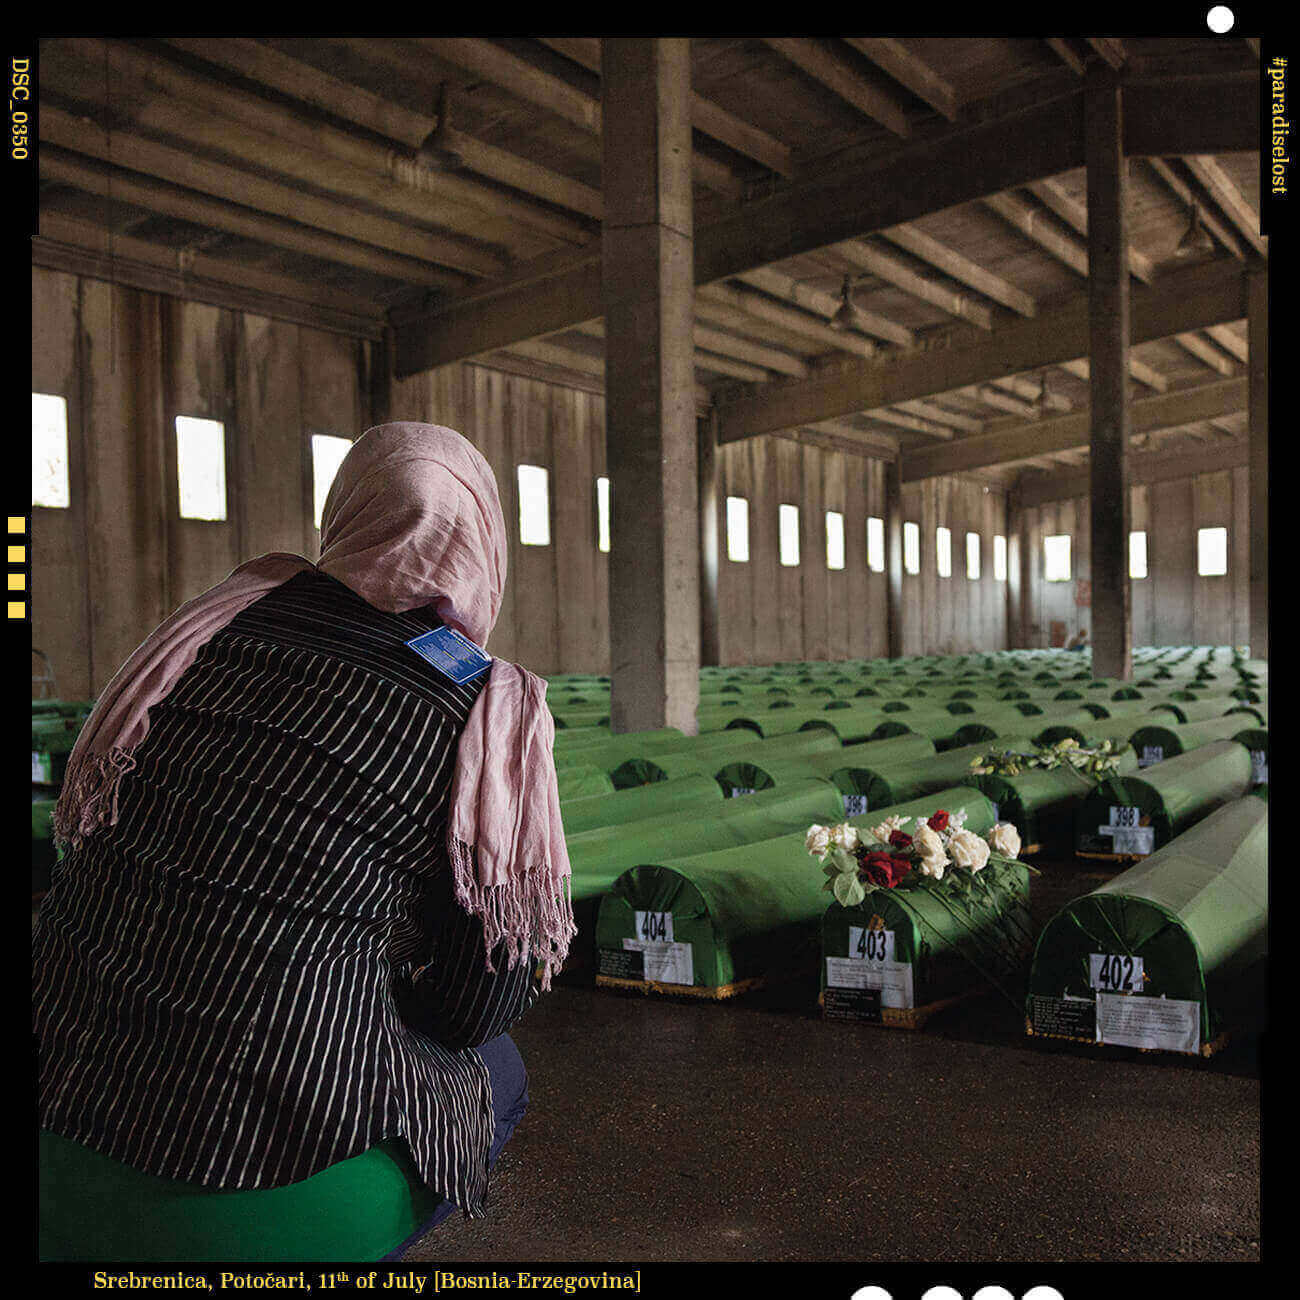 Tombe all'interno del Memoriale di Srebrenica-Potocari